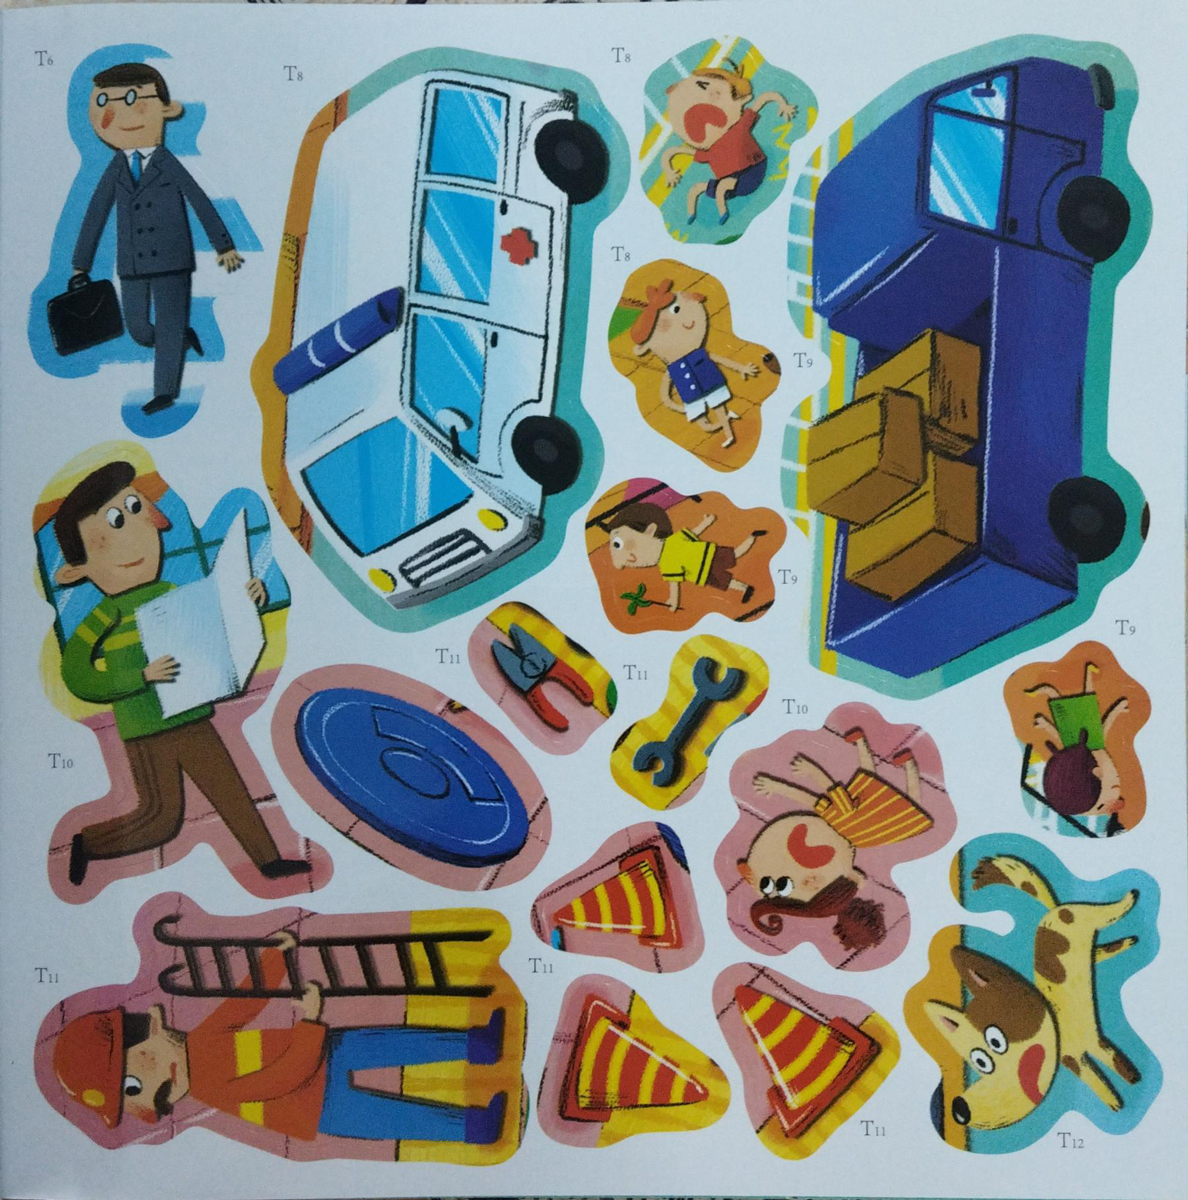 Sticker Kỹ Năng An Toàn Cho Bé - An Toàn Giao Thông (ND)